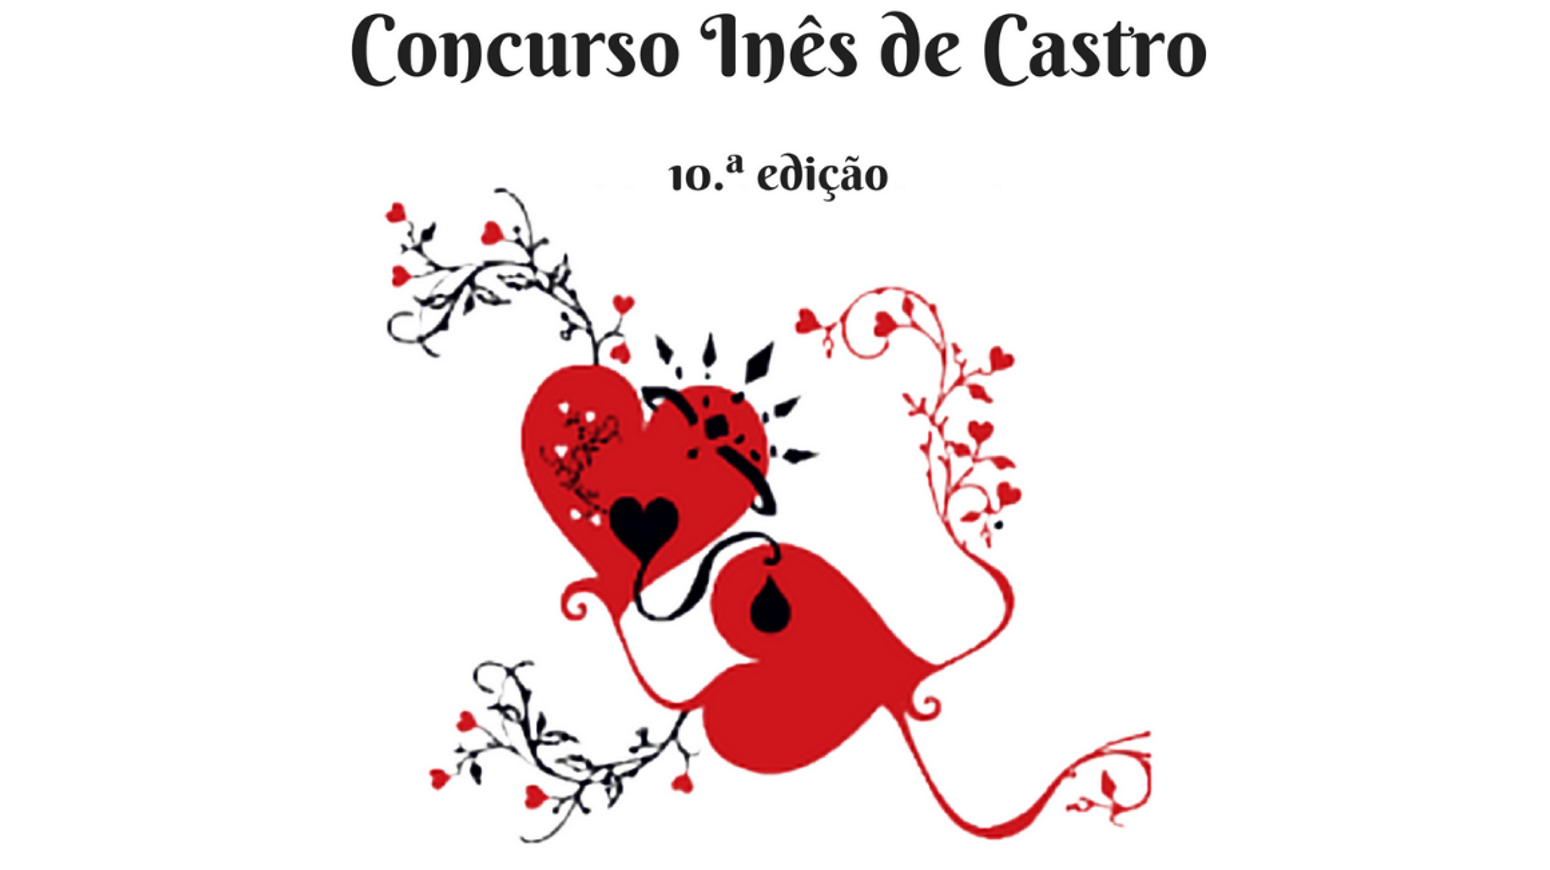 Concurso Inês de Castro 10.ª edição - 2018